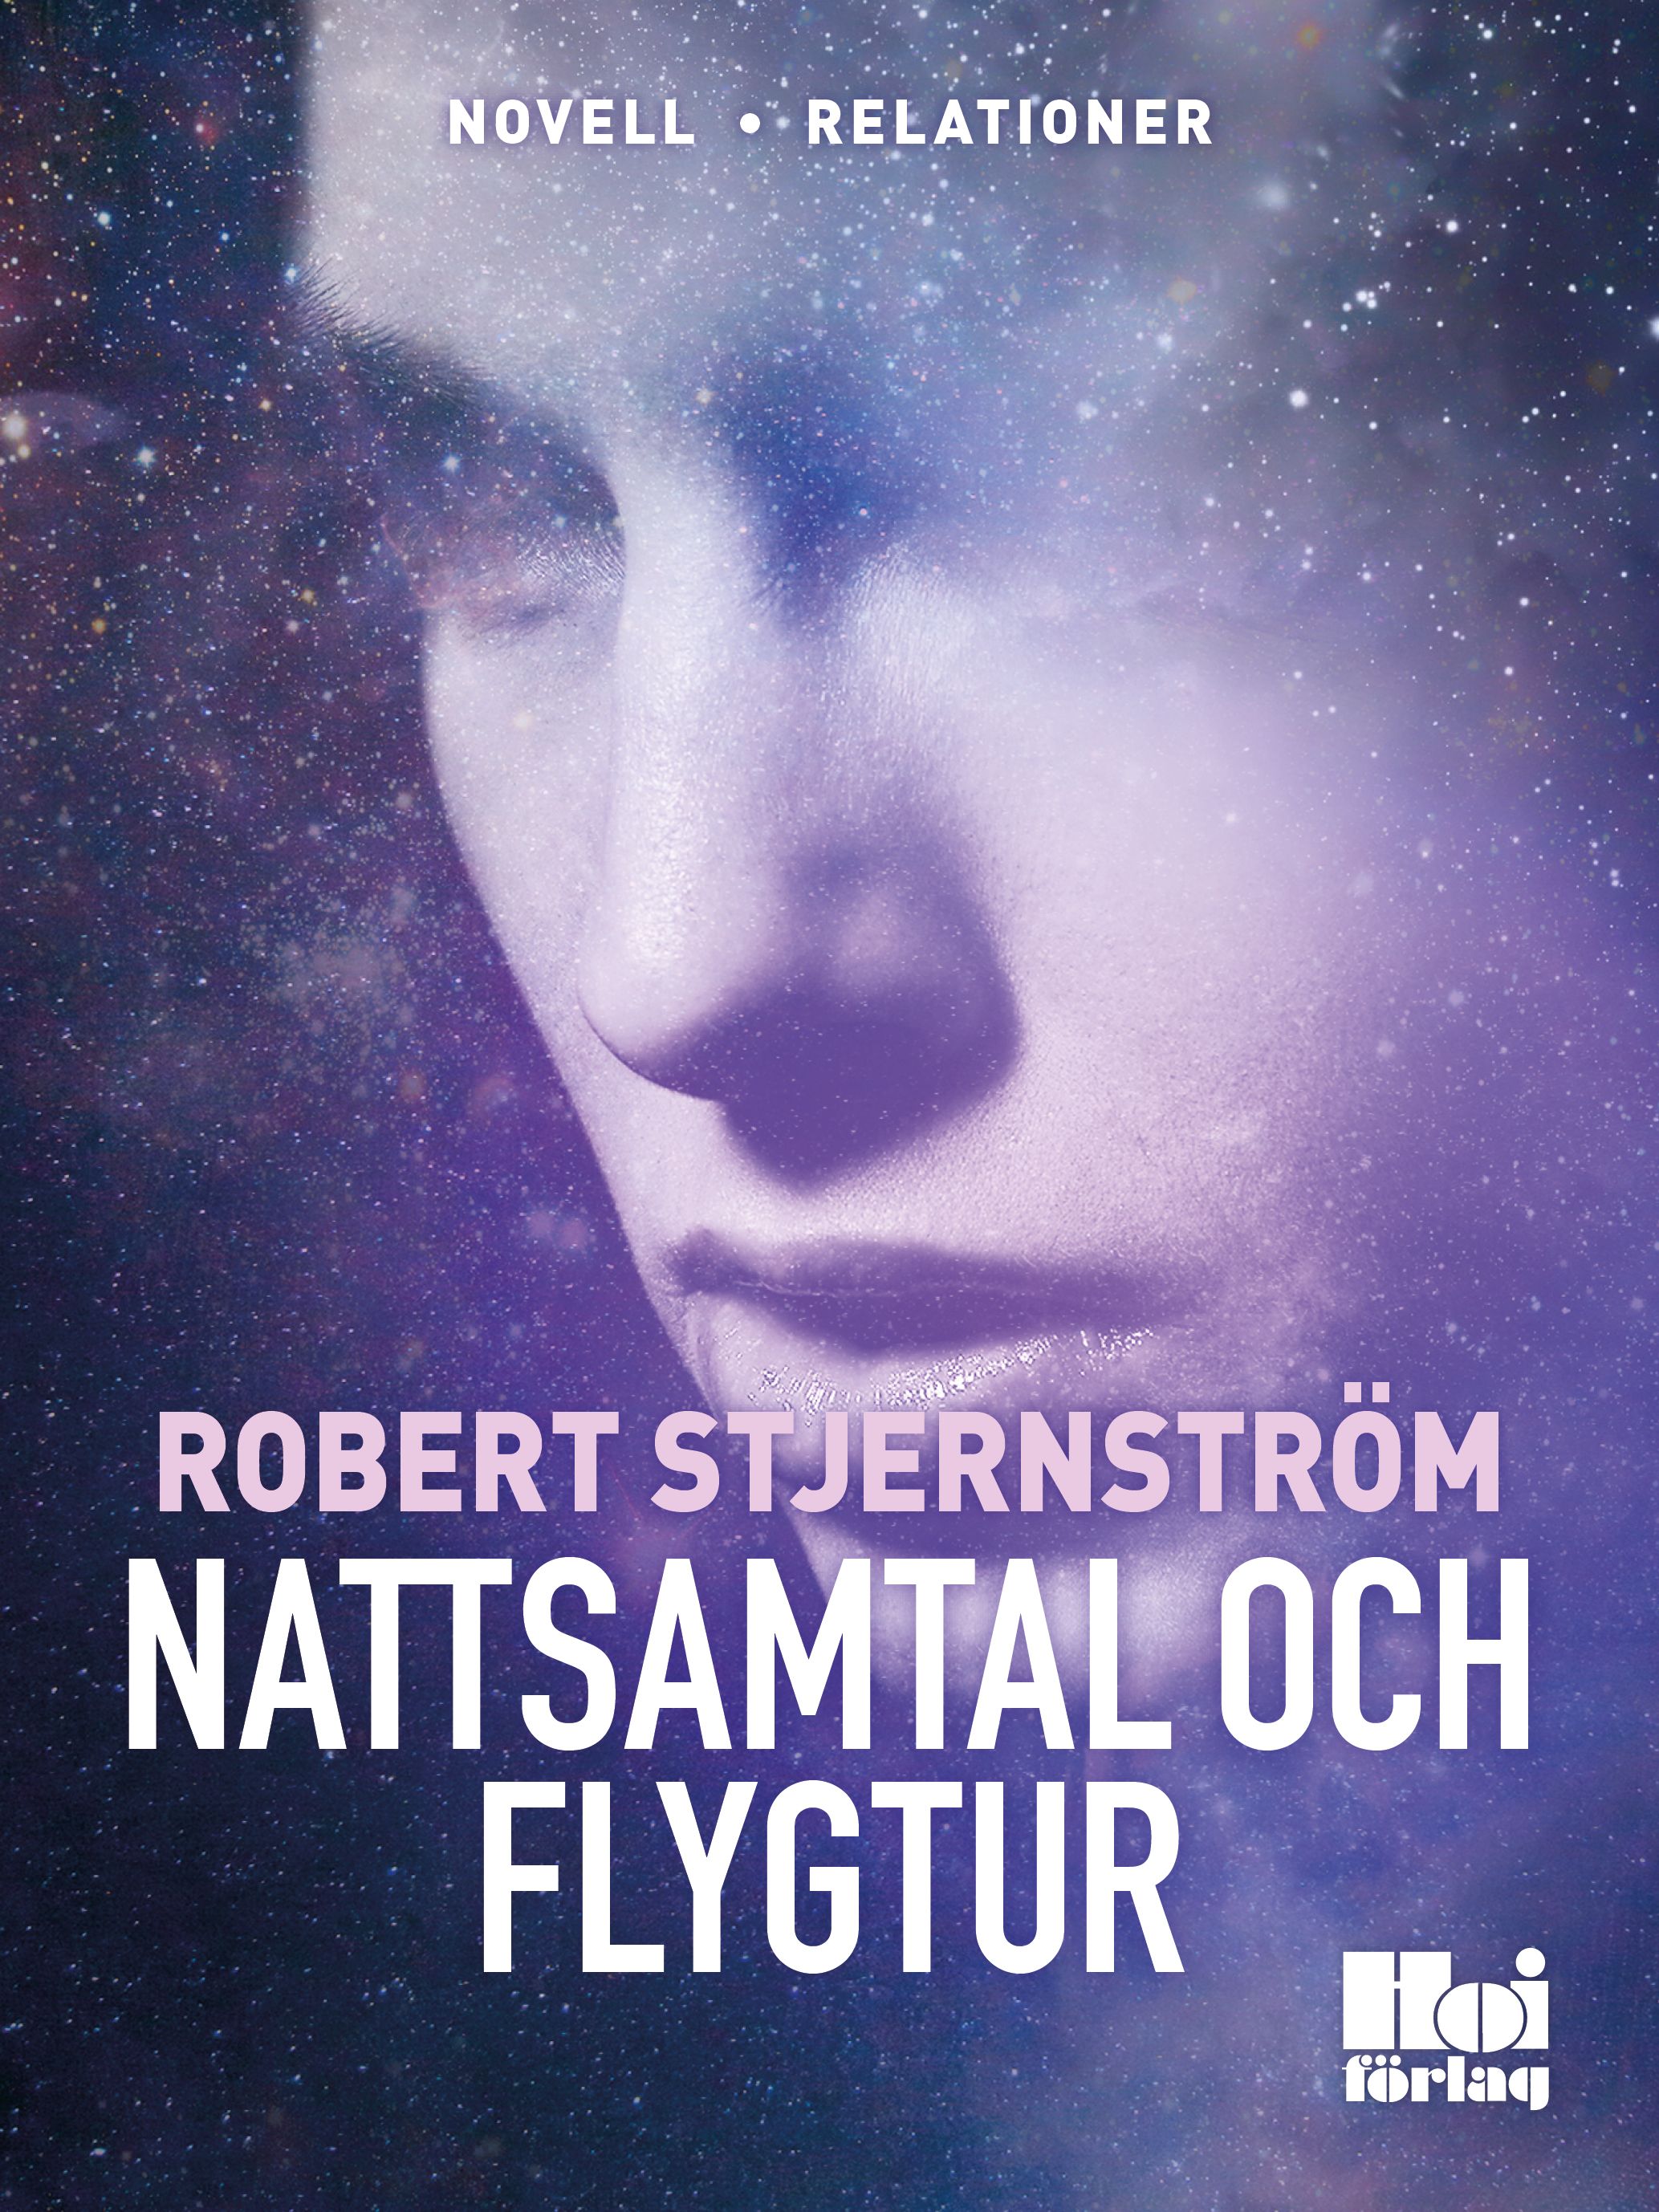 Nattsamtal och Flygtur, e-bok av Robert Stjernström